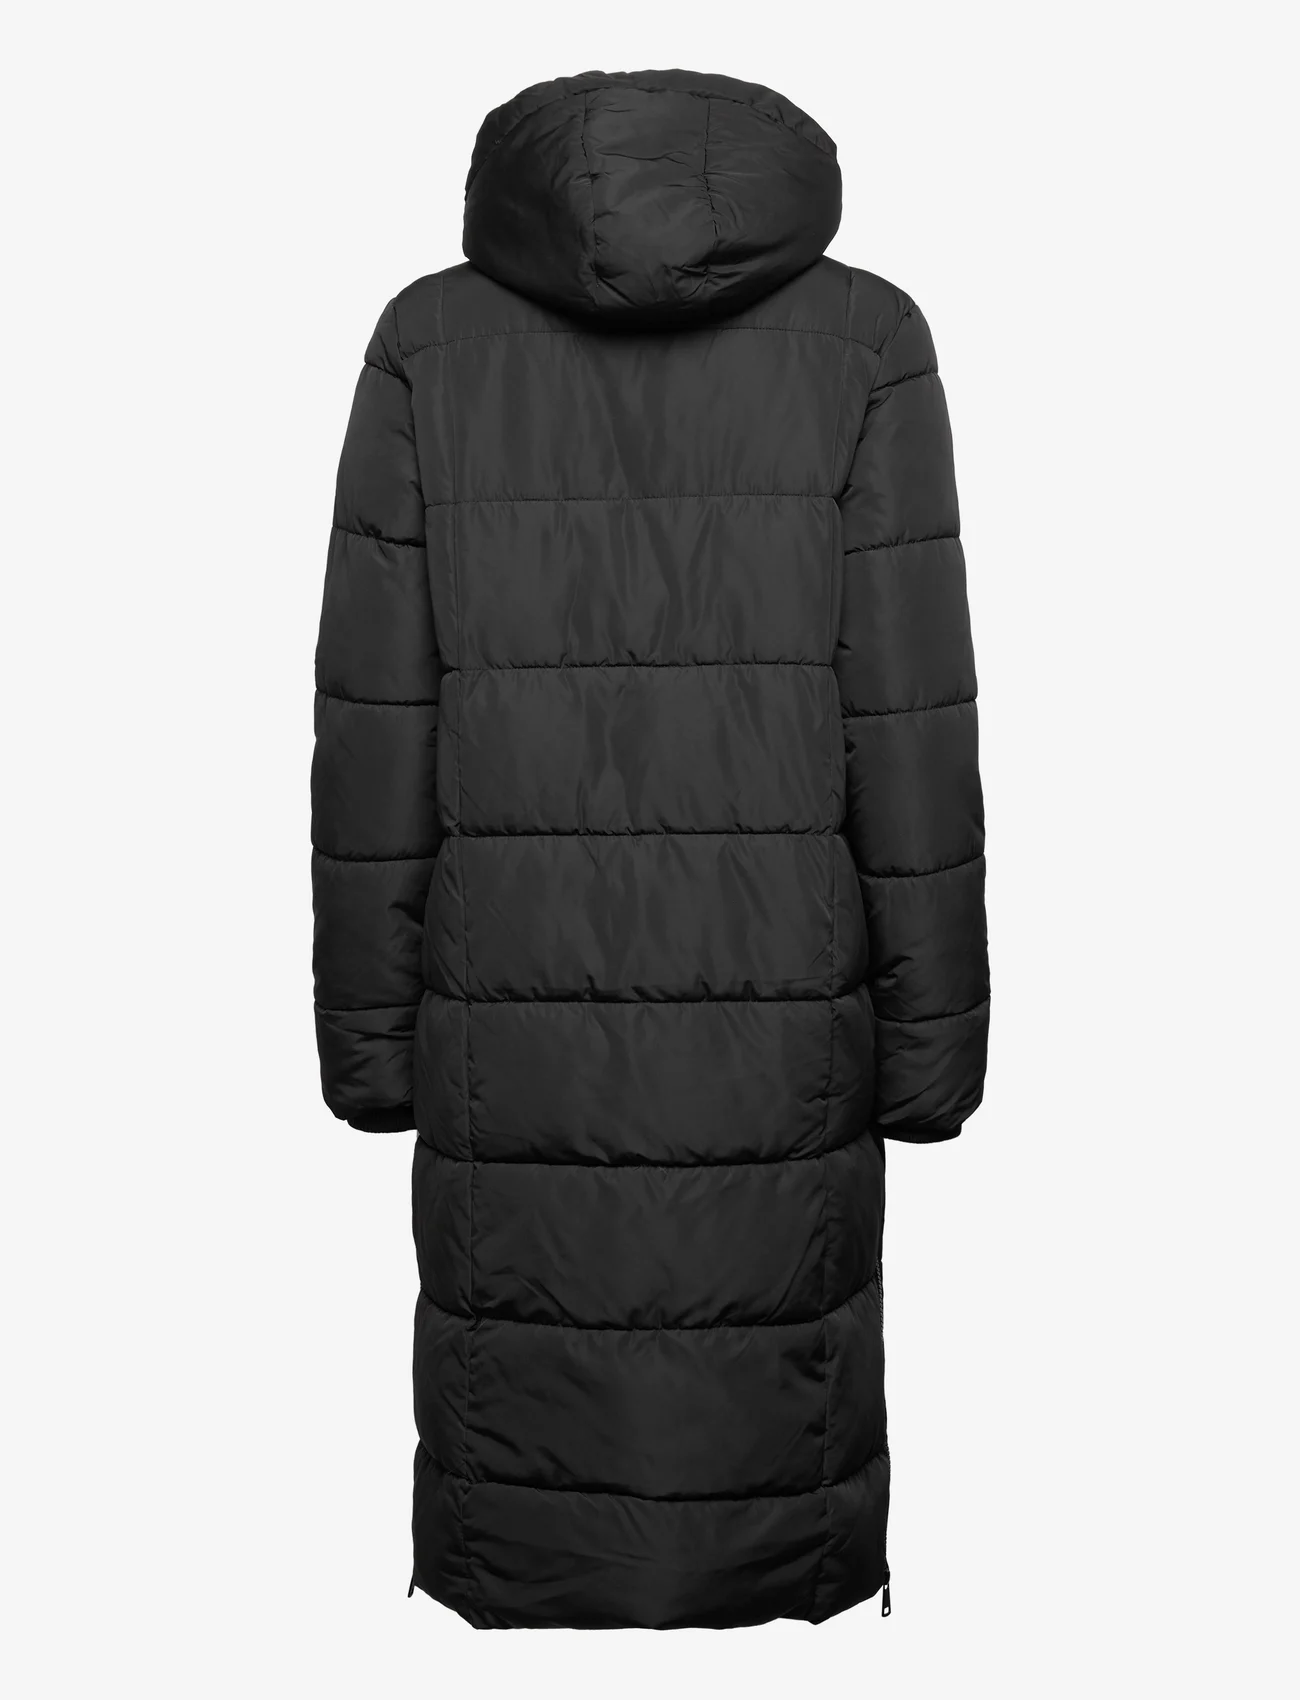 Fransa - FRBELLAS JA 1 - winter jackets - black - 1